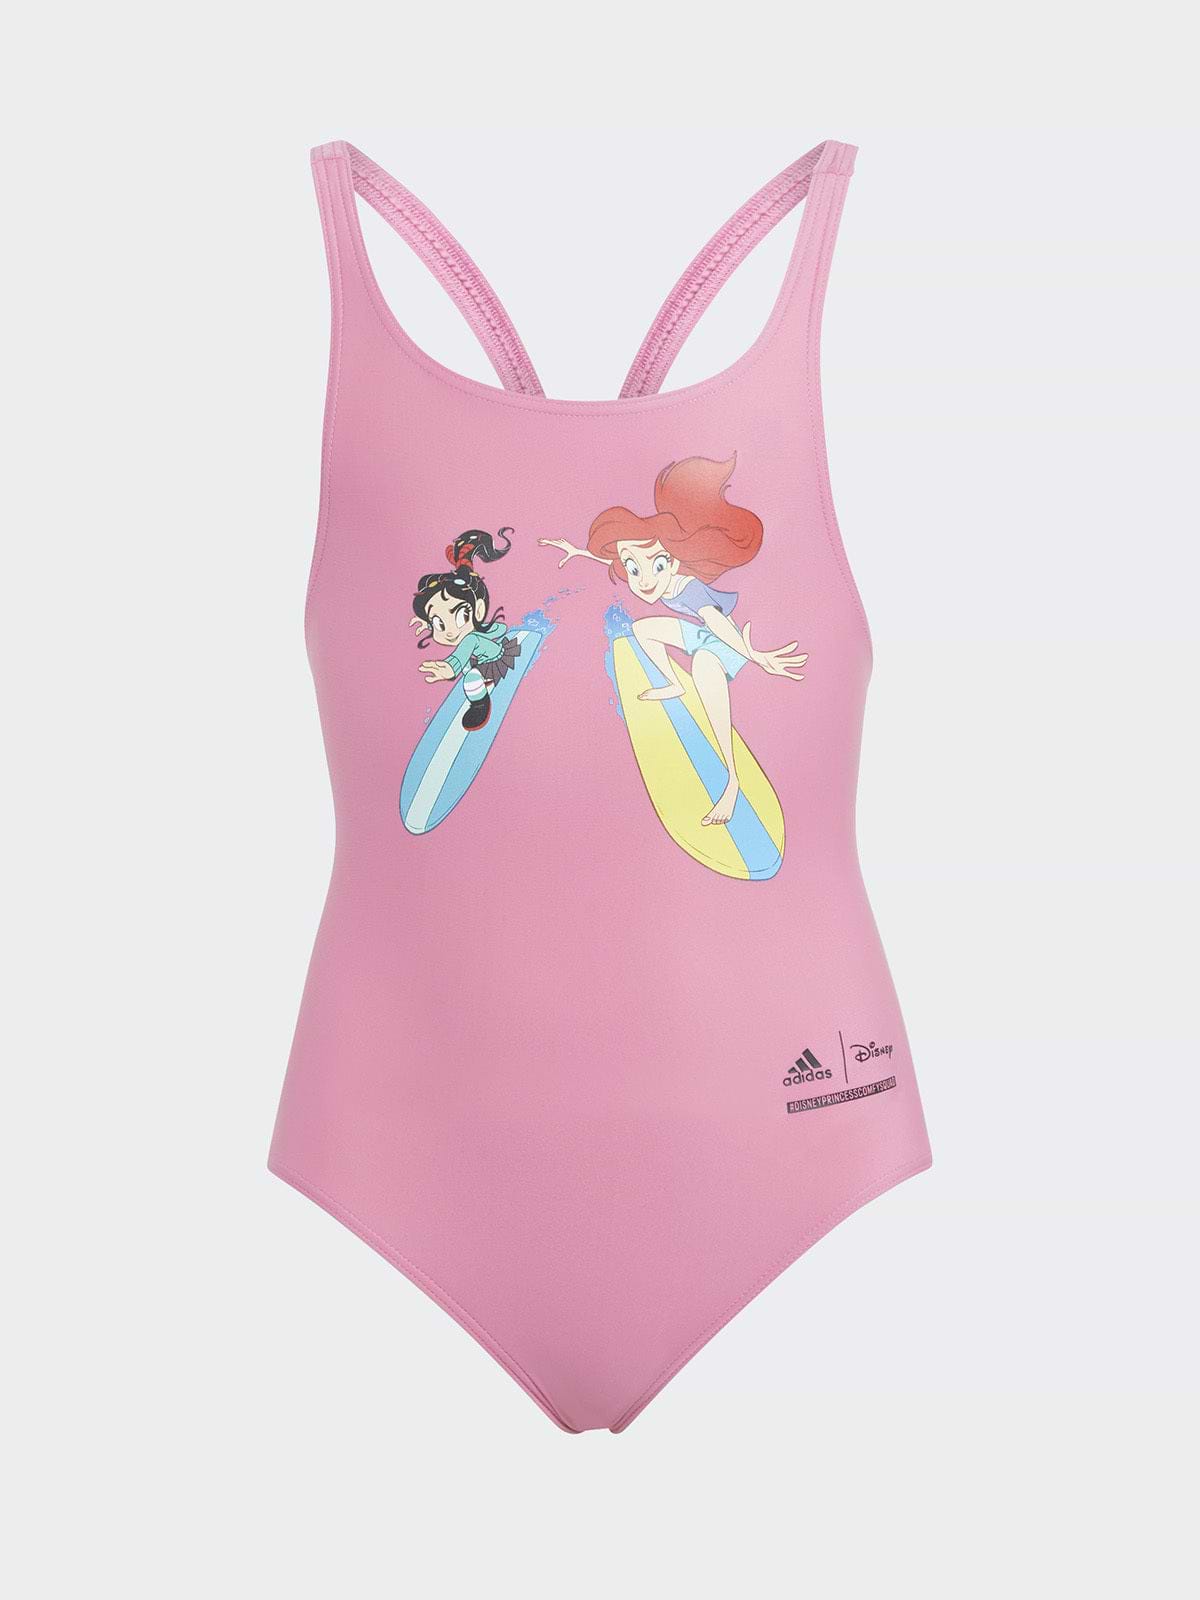 בגד ים שלם עם הדפס נסיכות ©Disney / תינוקות וילדות